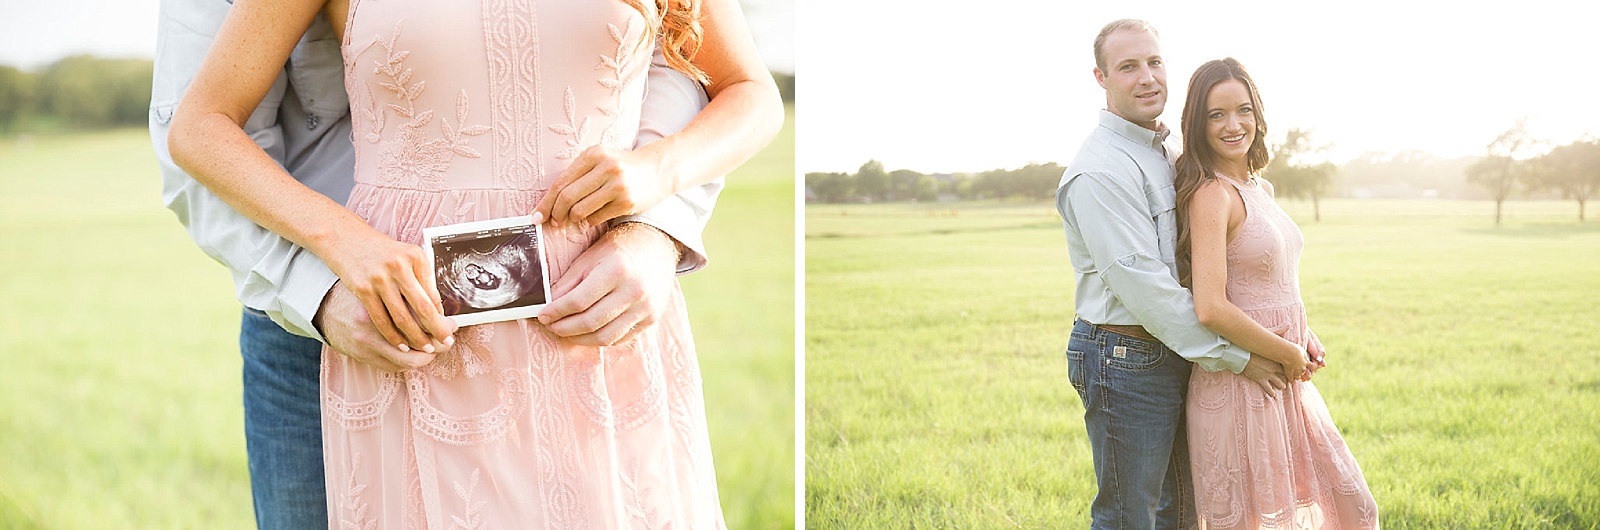 TX photographer Randi Michelle Photography captures pregnancy announcement